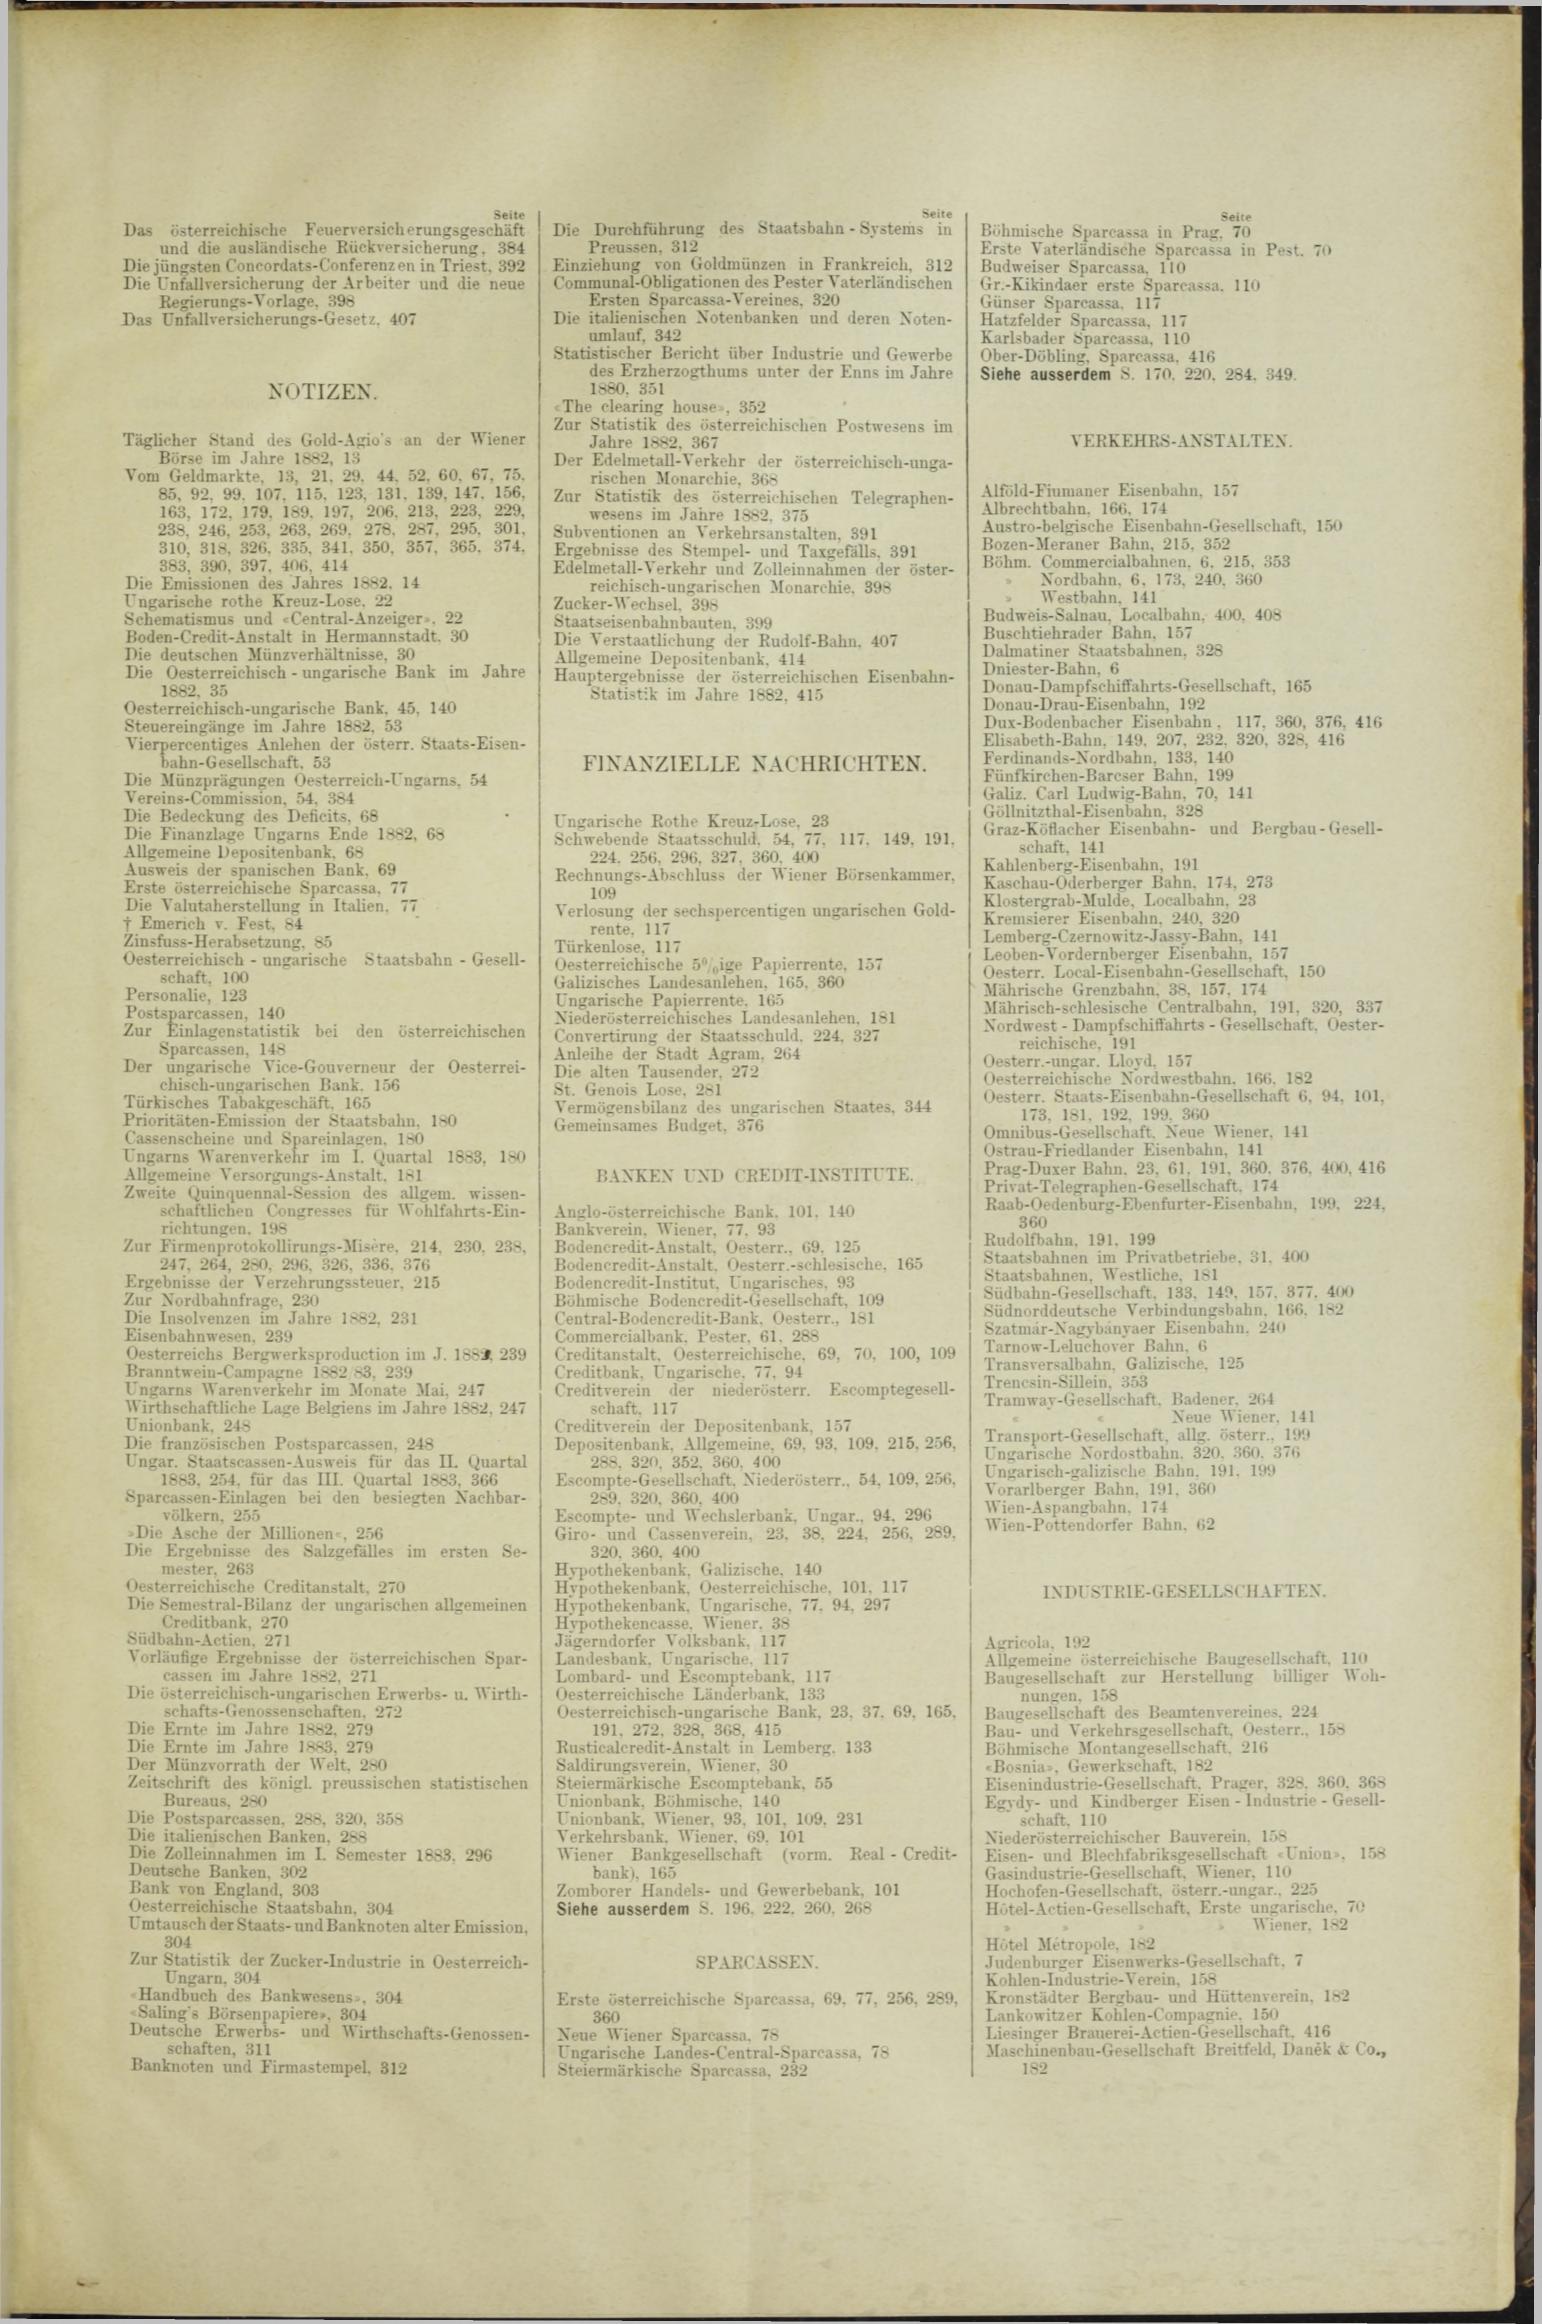 Der Tresor 07.06.1883 - Seite 13